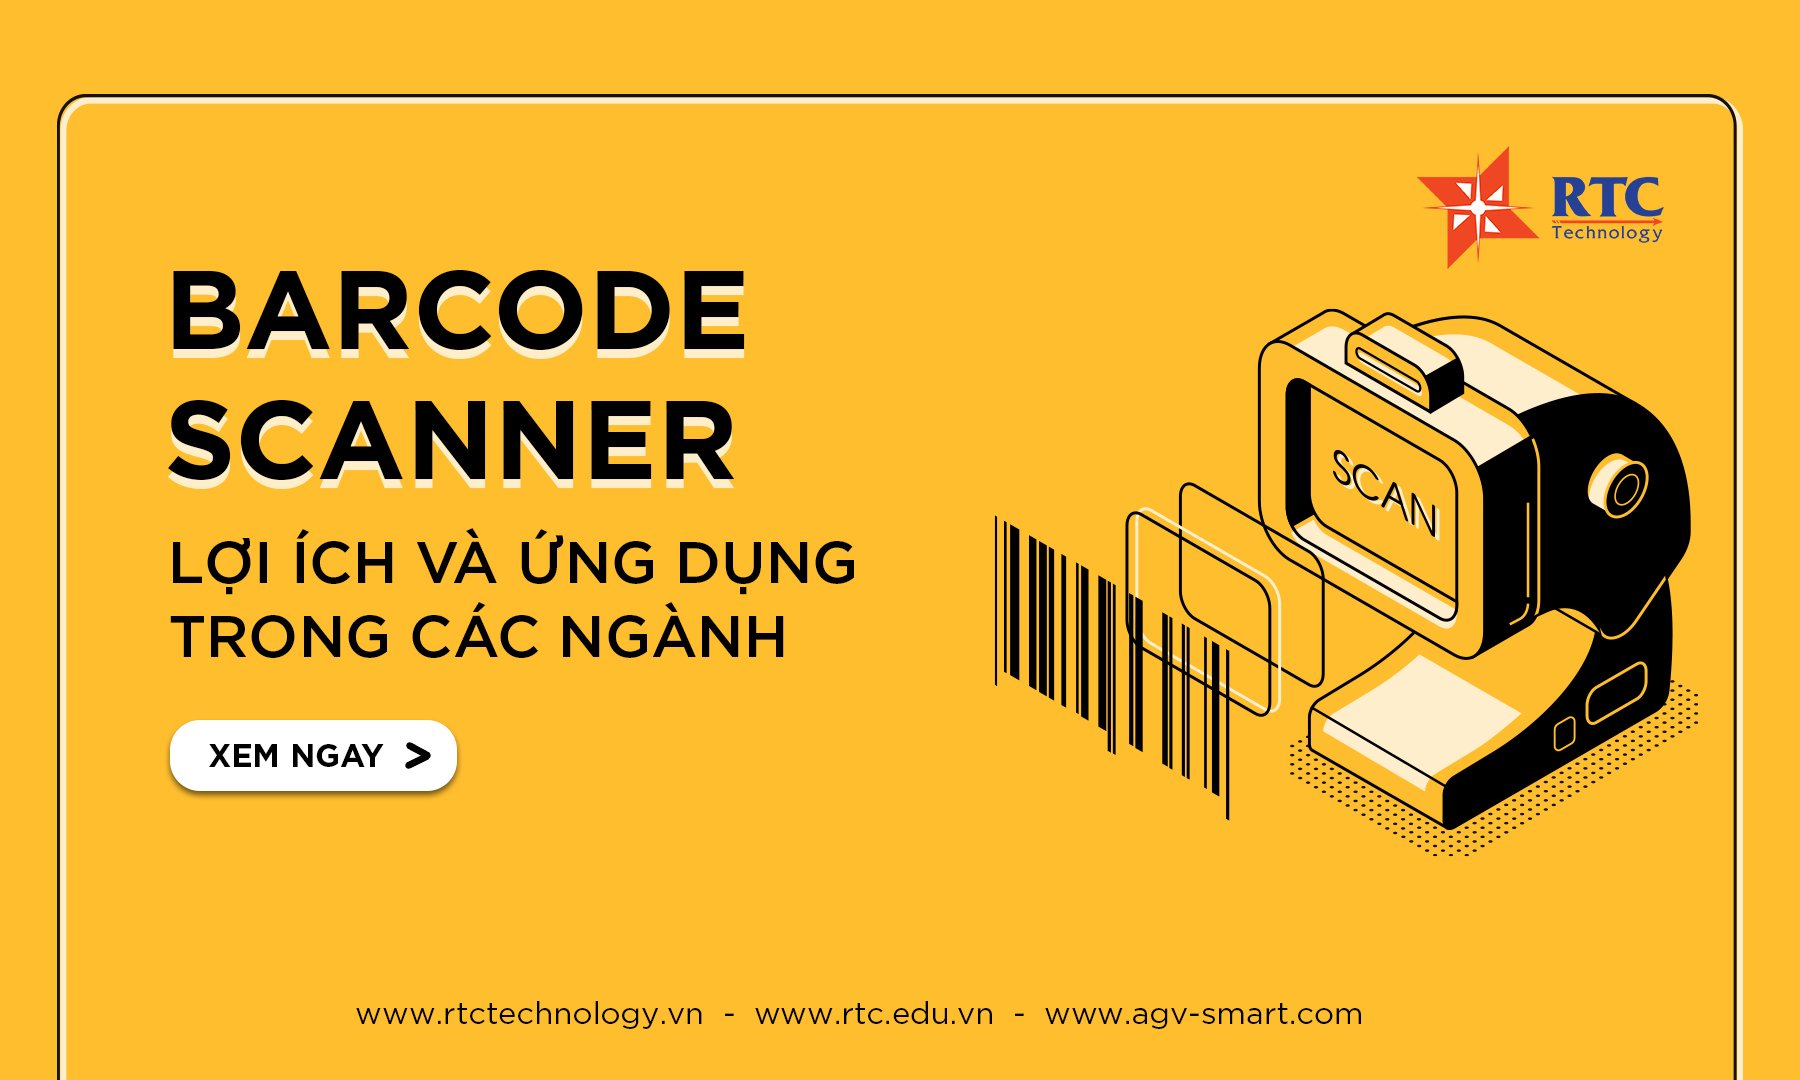 Barcode scanner – Lợi ích và ứng dụng trong các ngành